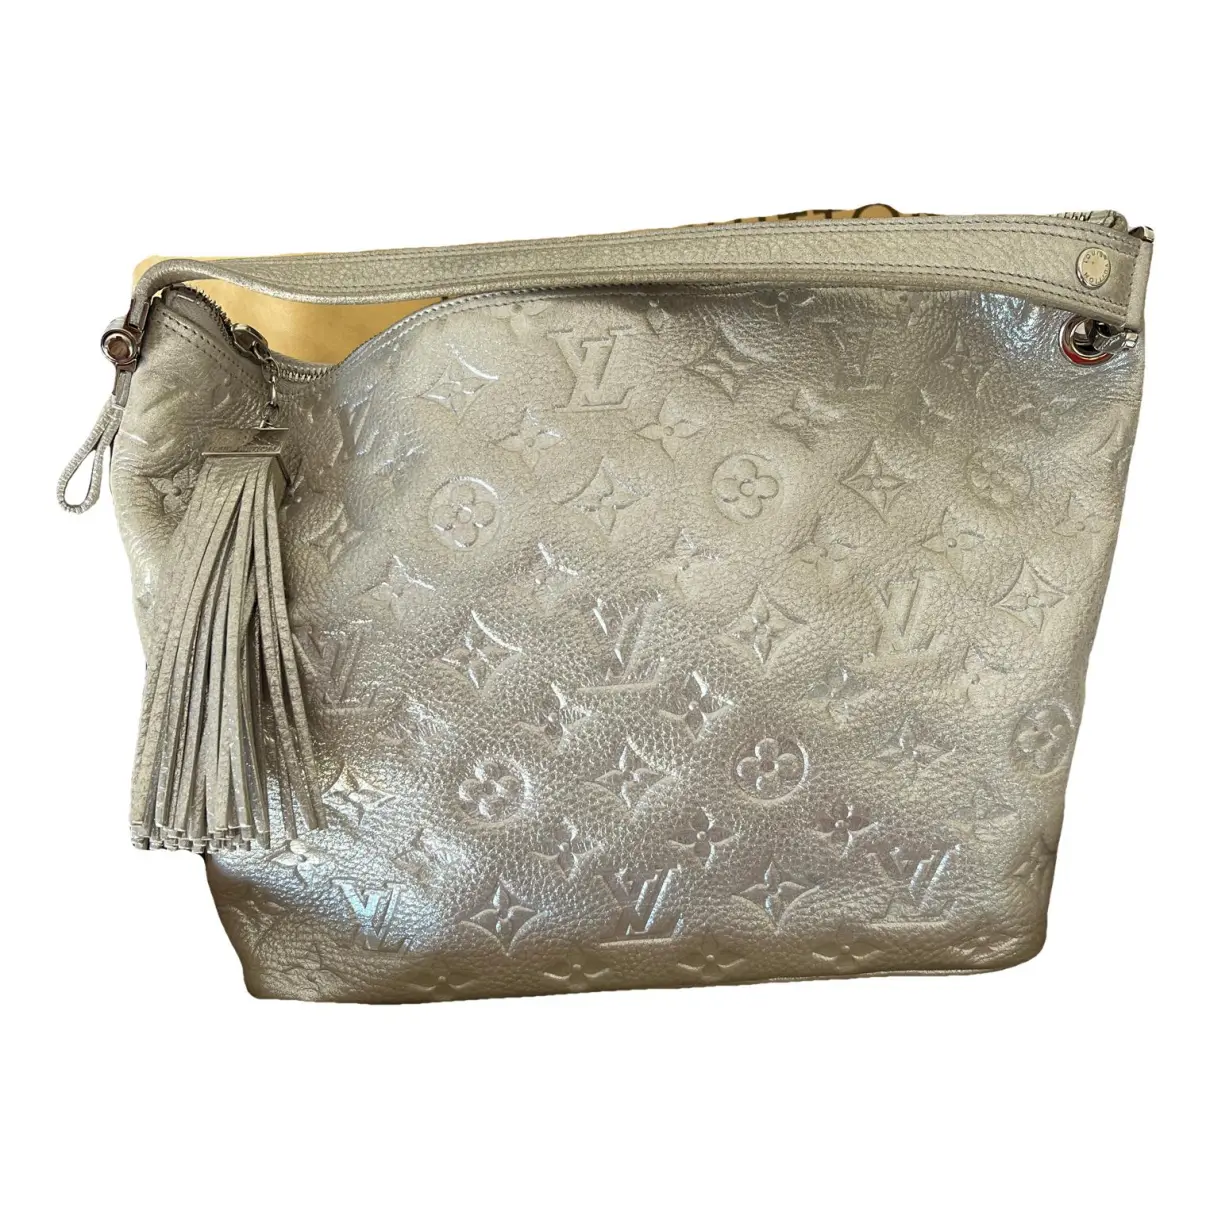 Beaubourg Hobo leather handbag